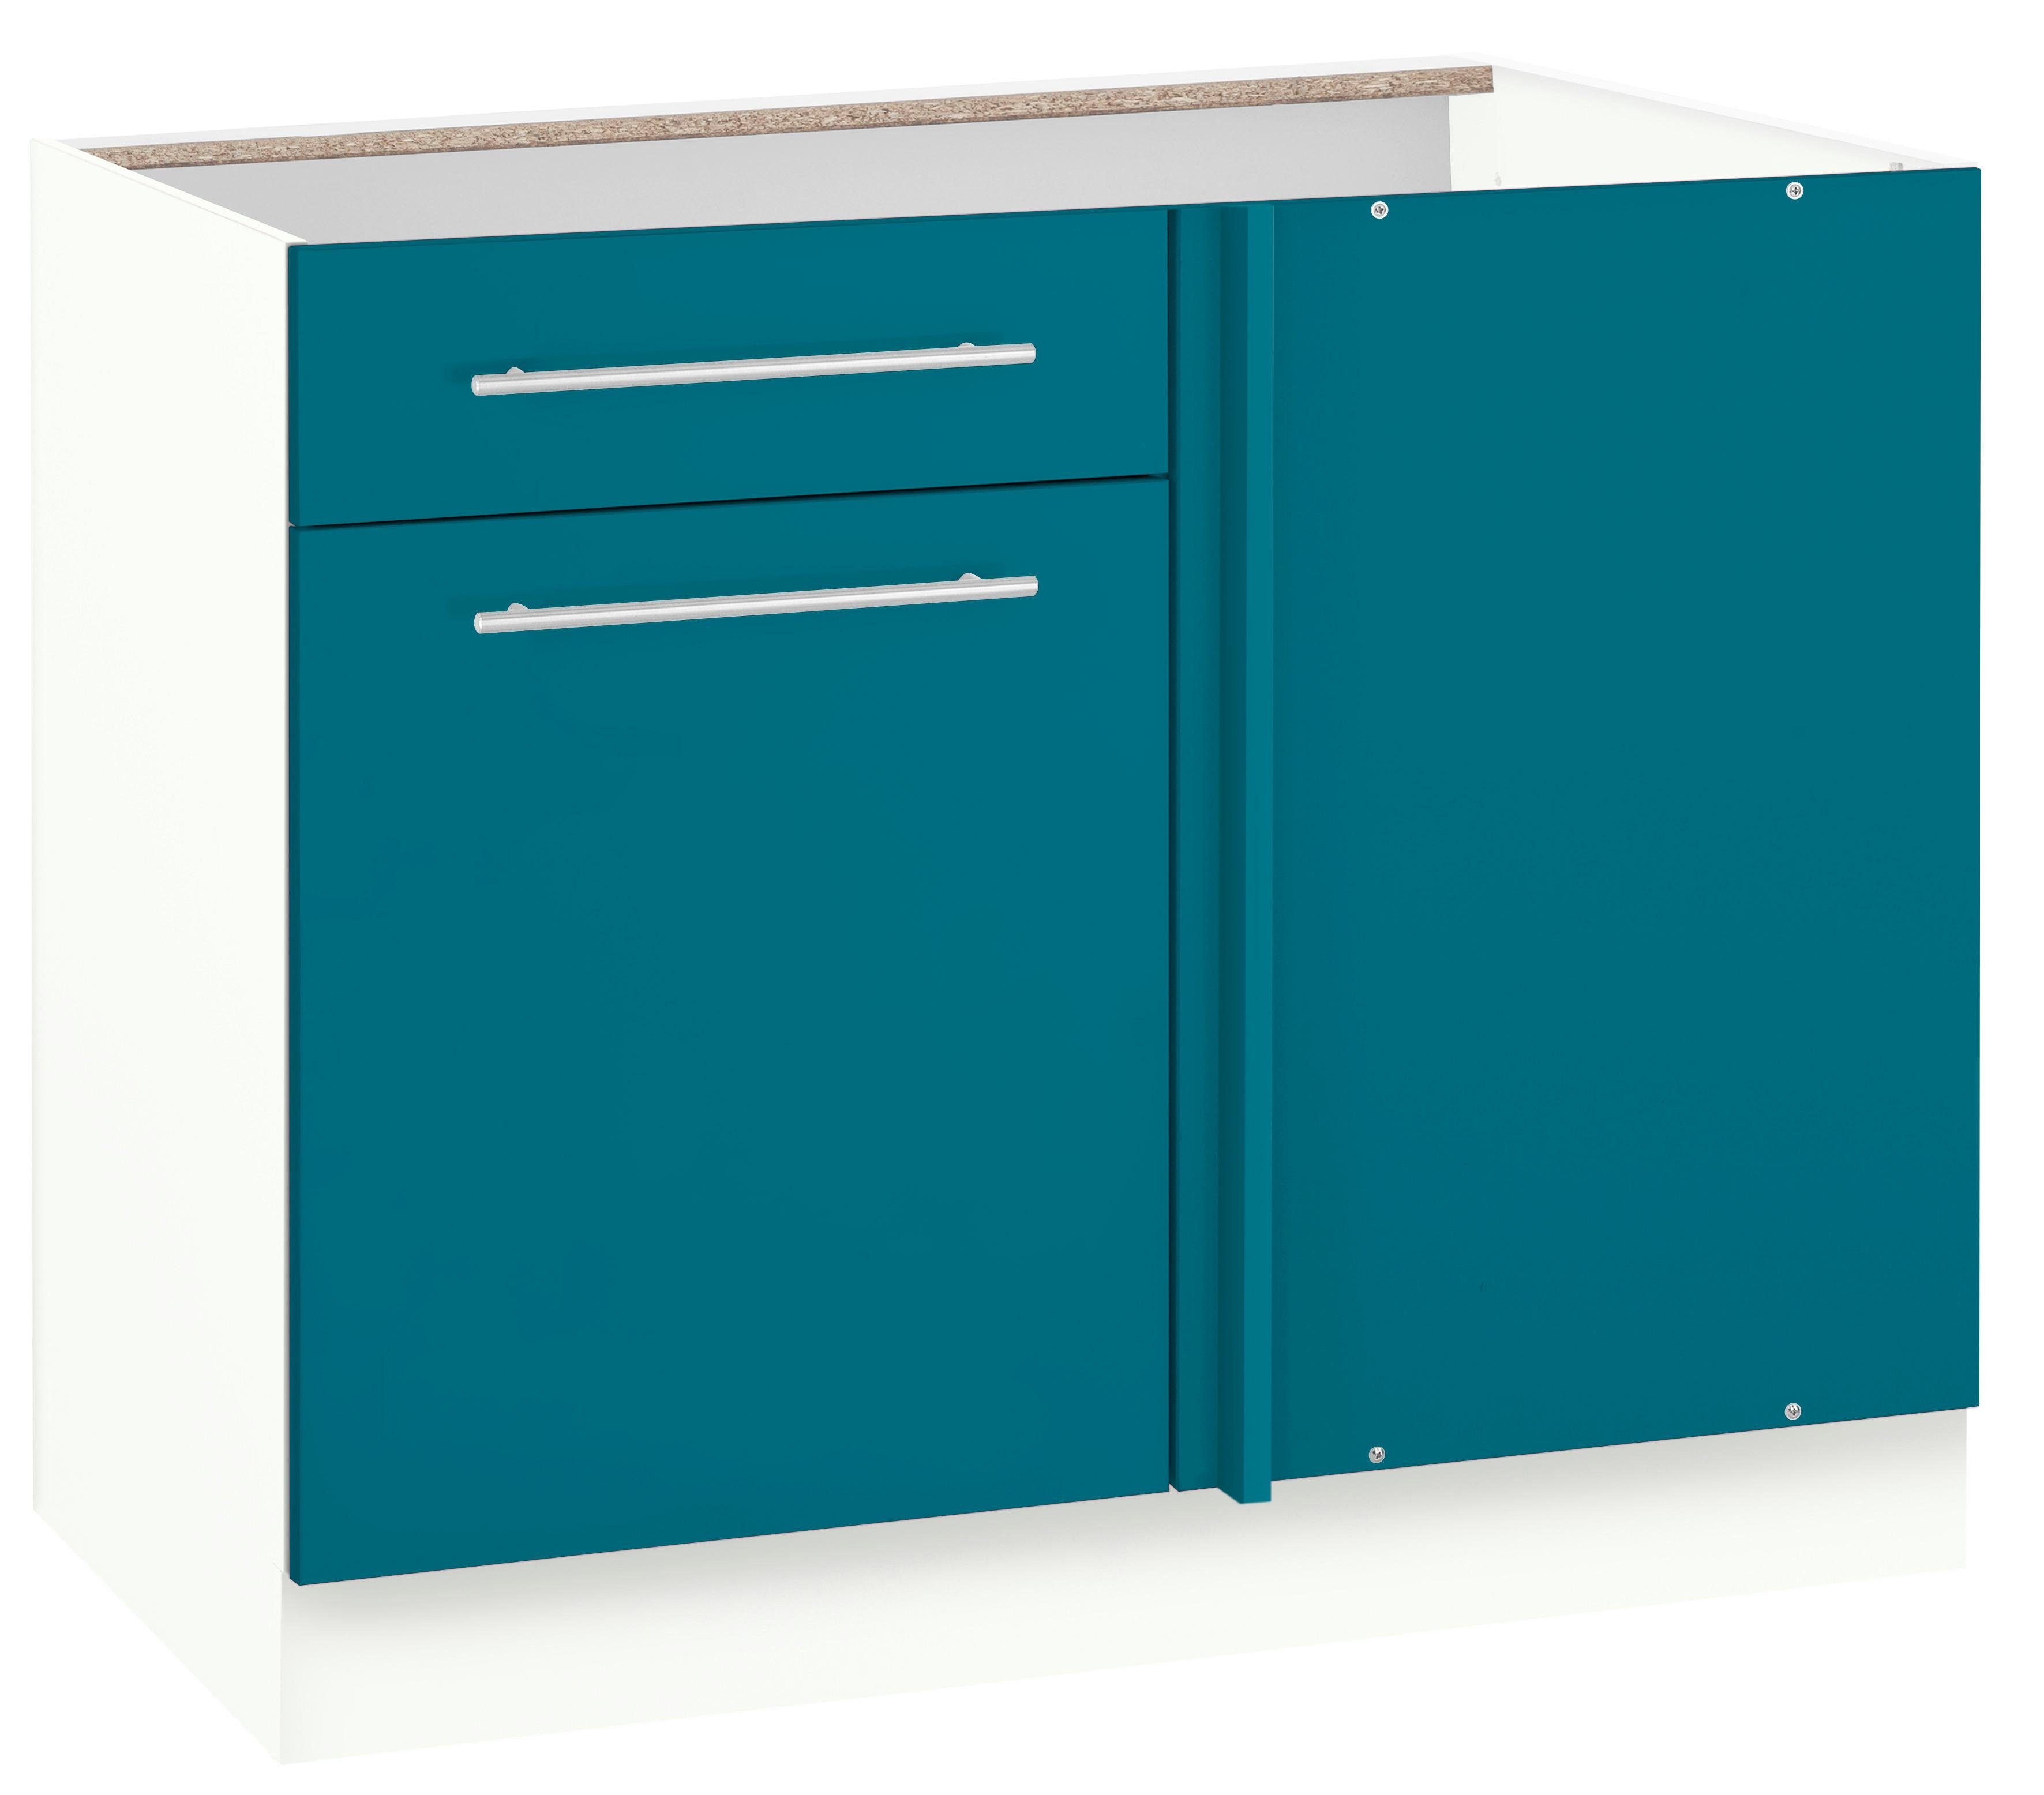 Planungsmaß Eckunterschrank Flexi2 Arbeitsplatte ozeanblau/weiß ohne 100 cm, Breite wiho 110 cm, Küchen